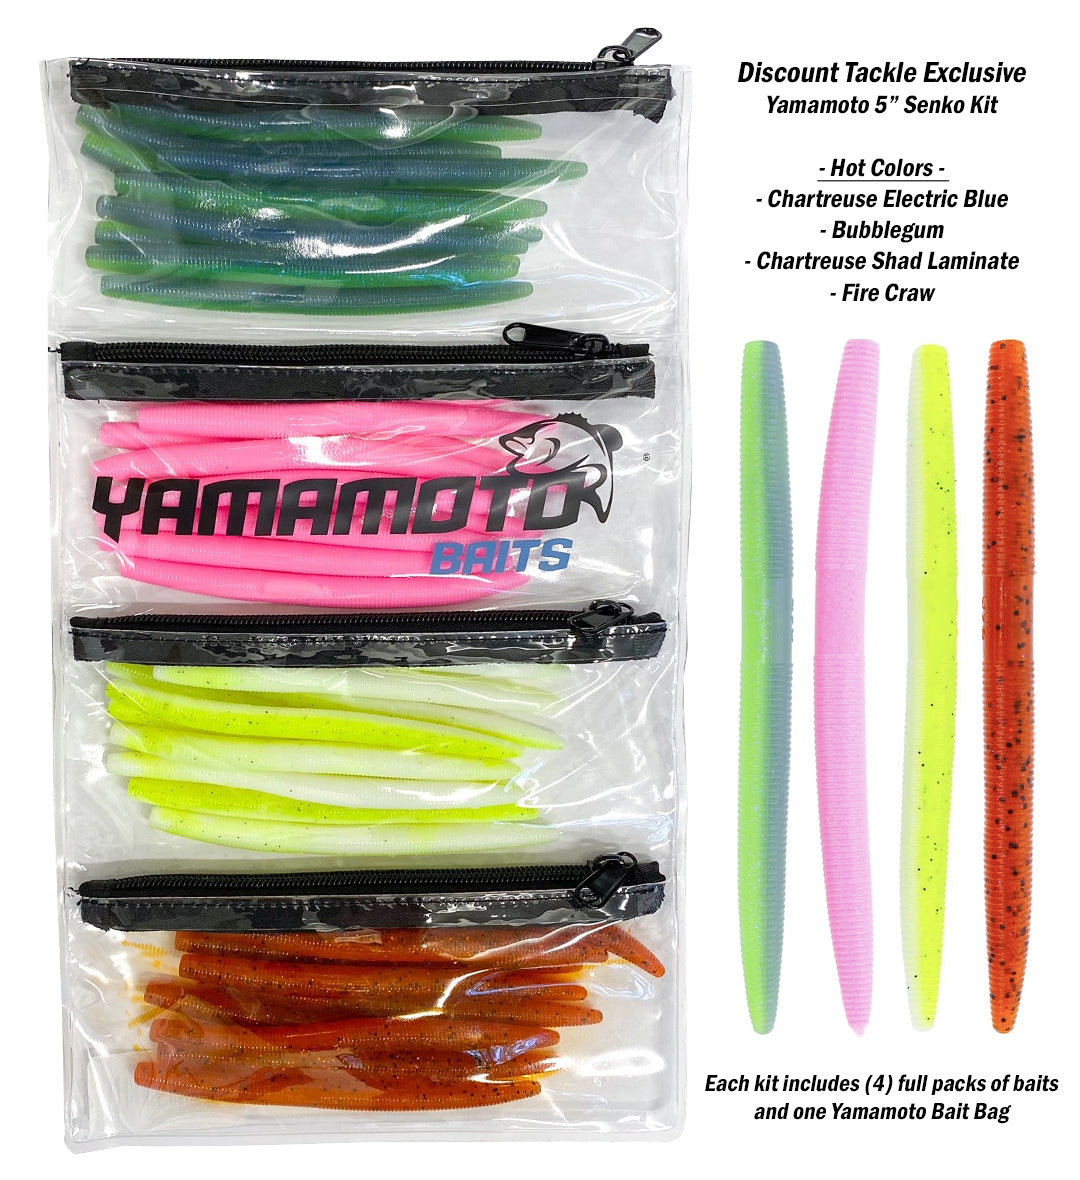 Gary Yamamoto 5 Yamasenko Custom Baits 9-10 Series 10 Pack CHOOSE